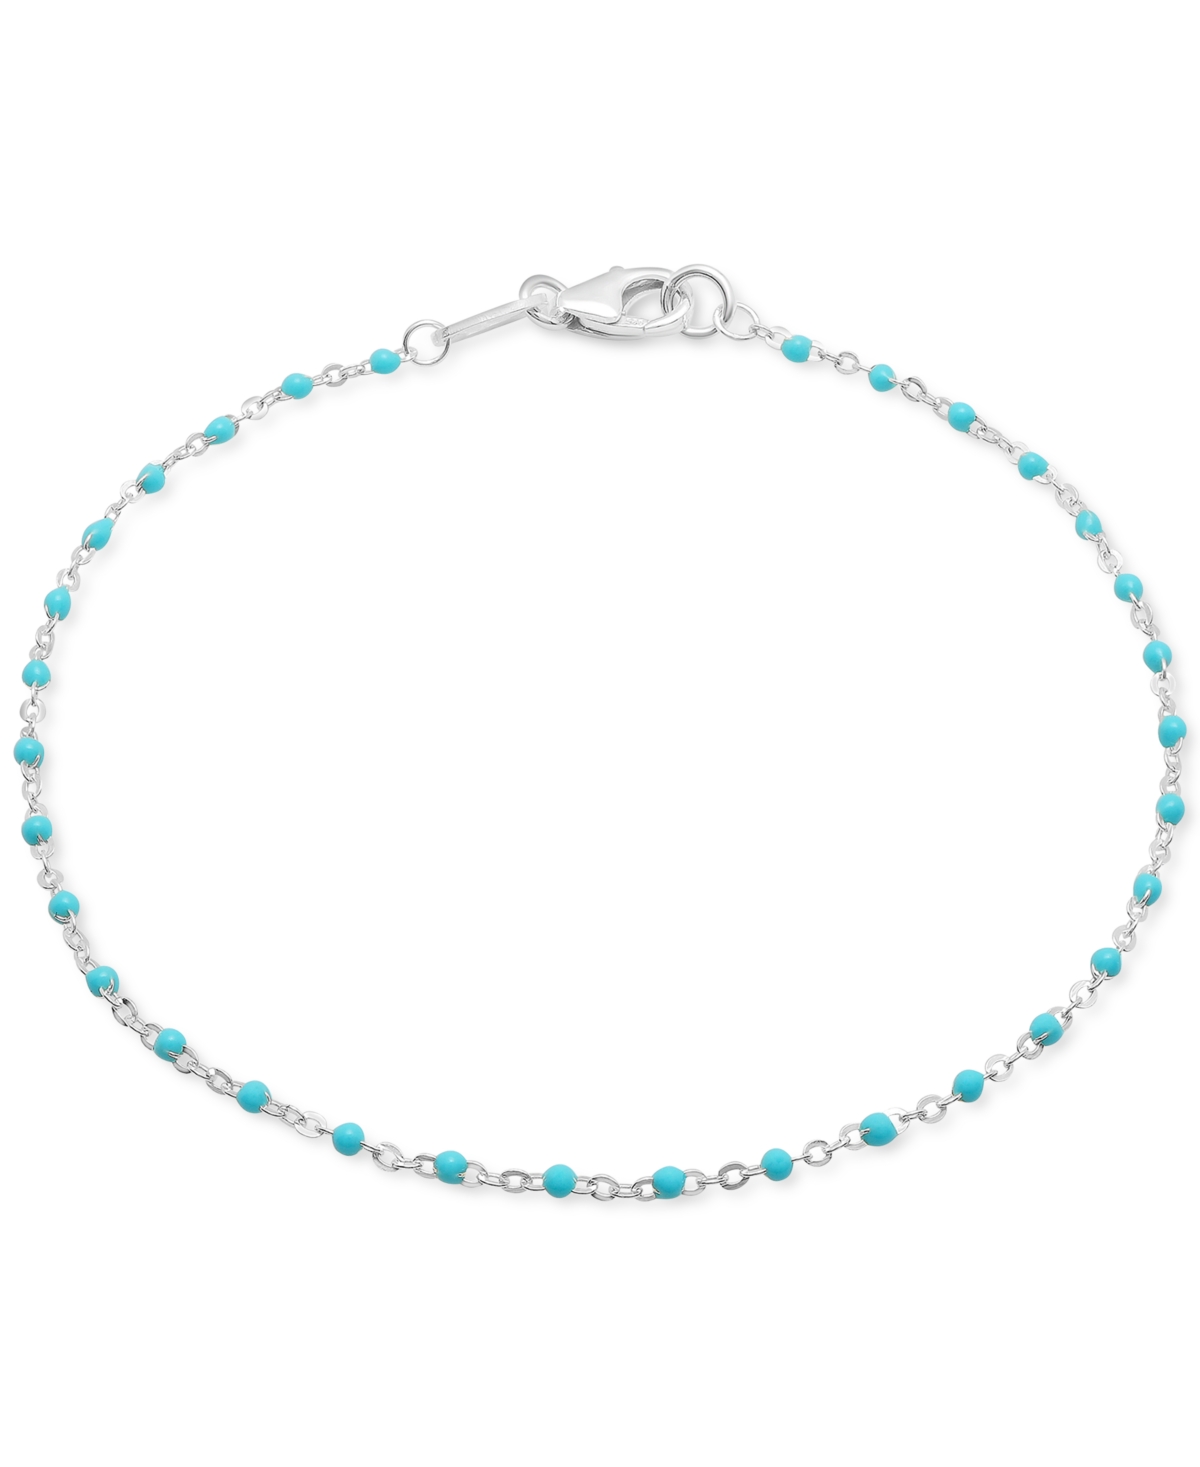 Giani Bernini Enamel Bead Ankle Bracelet, Created For Macy's In Light Blue